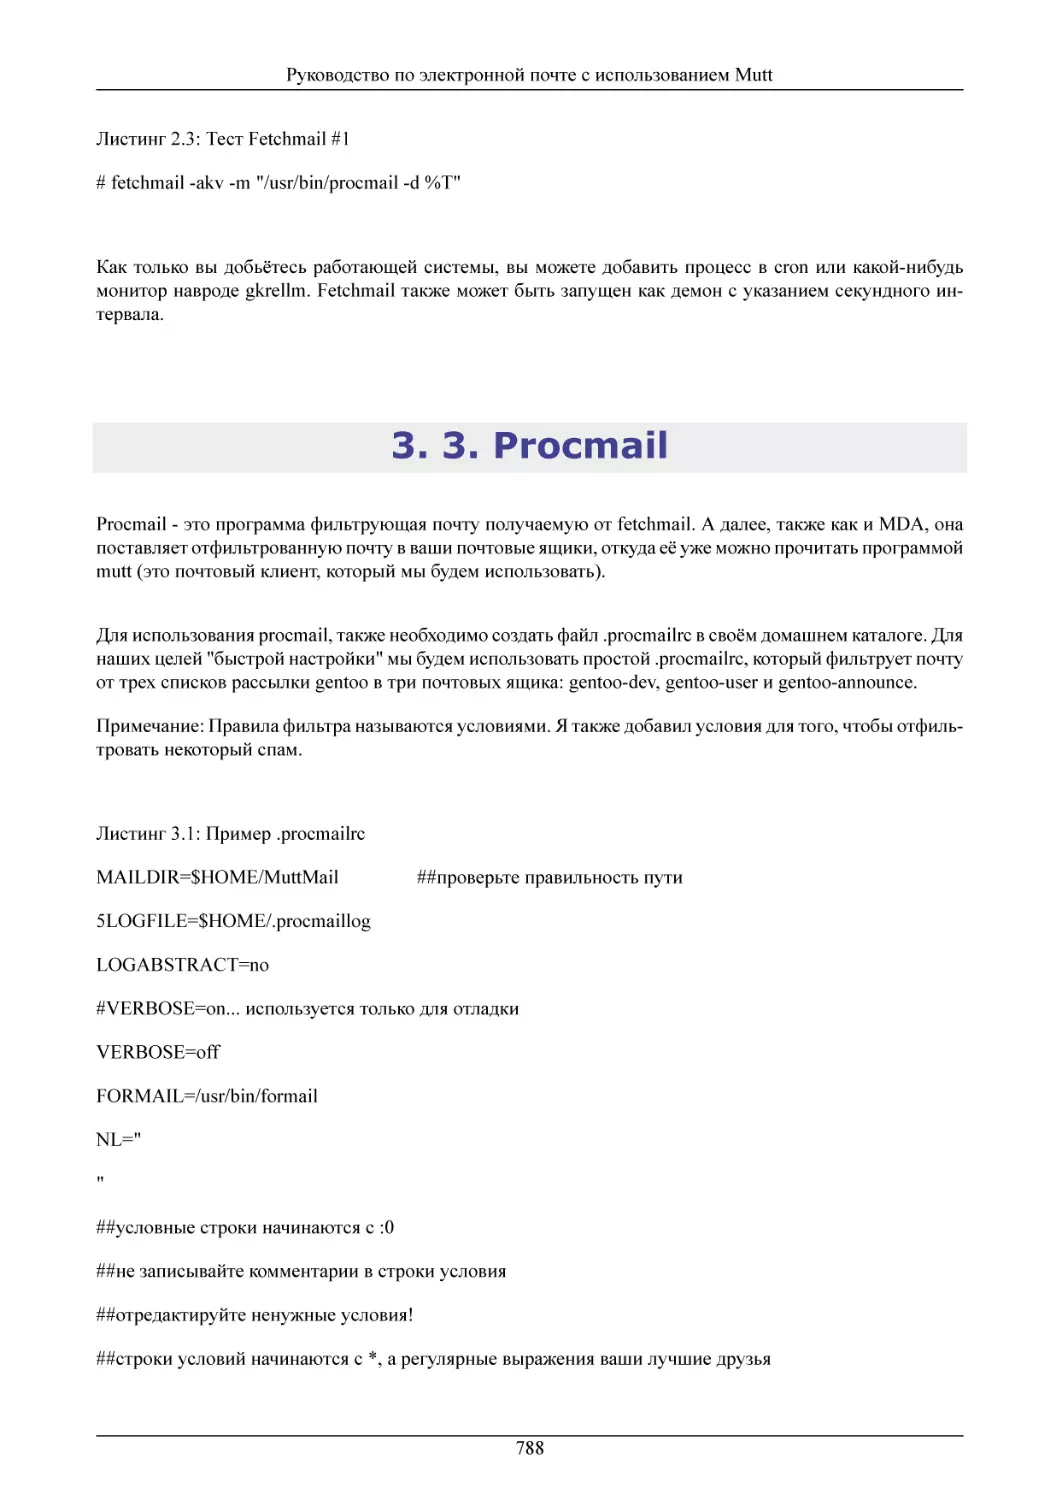 3. Procmail